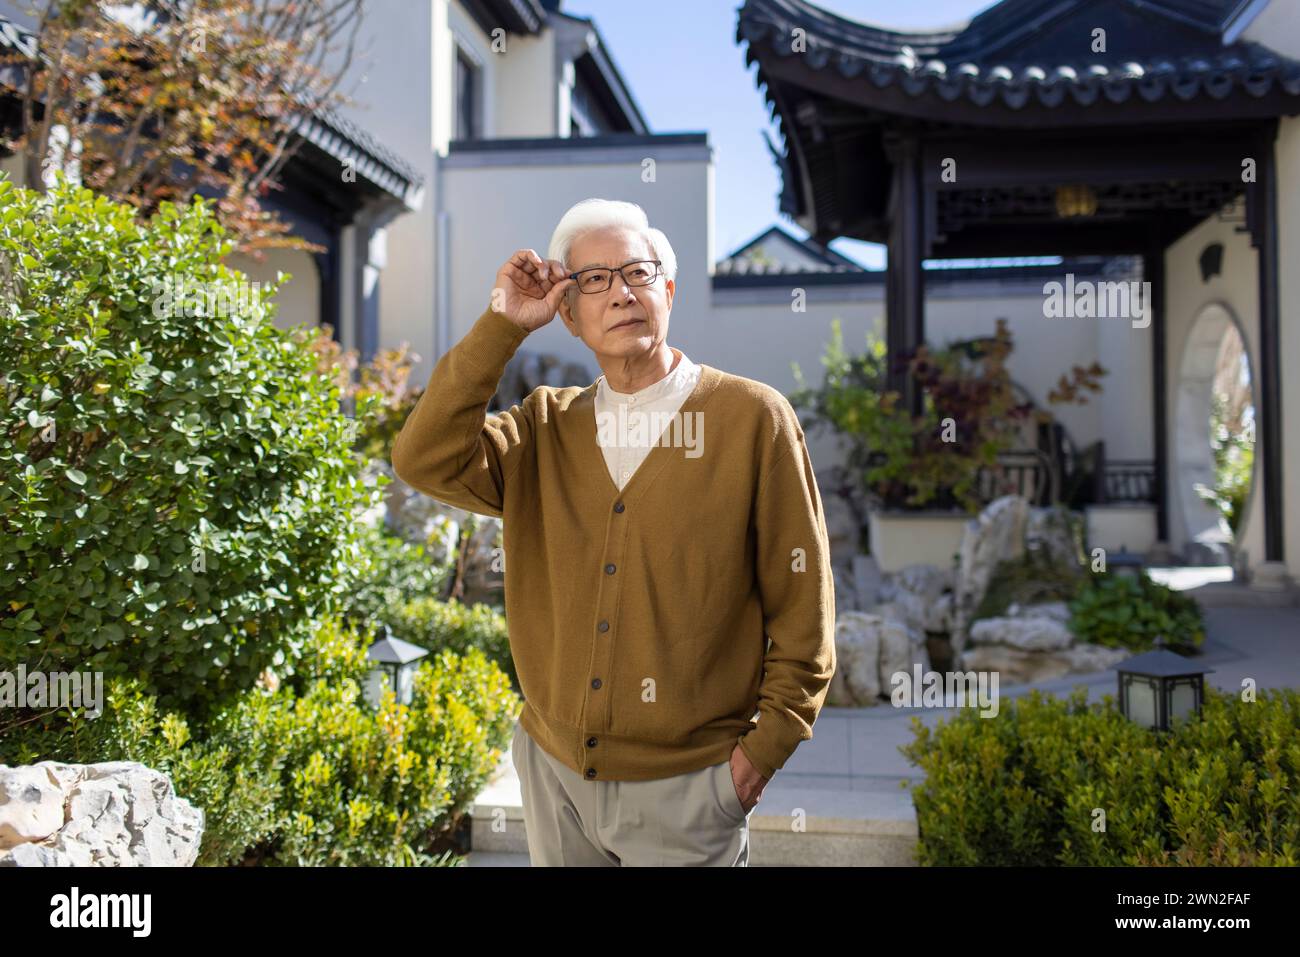 Senior Man in Classical Garden Stock Photo